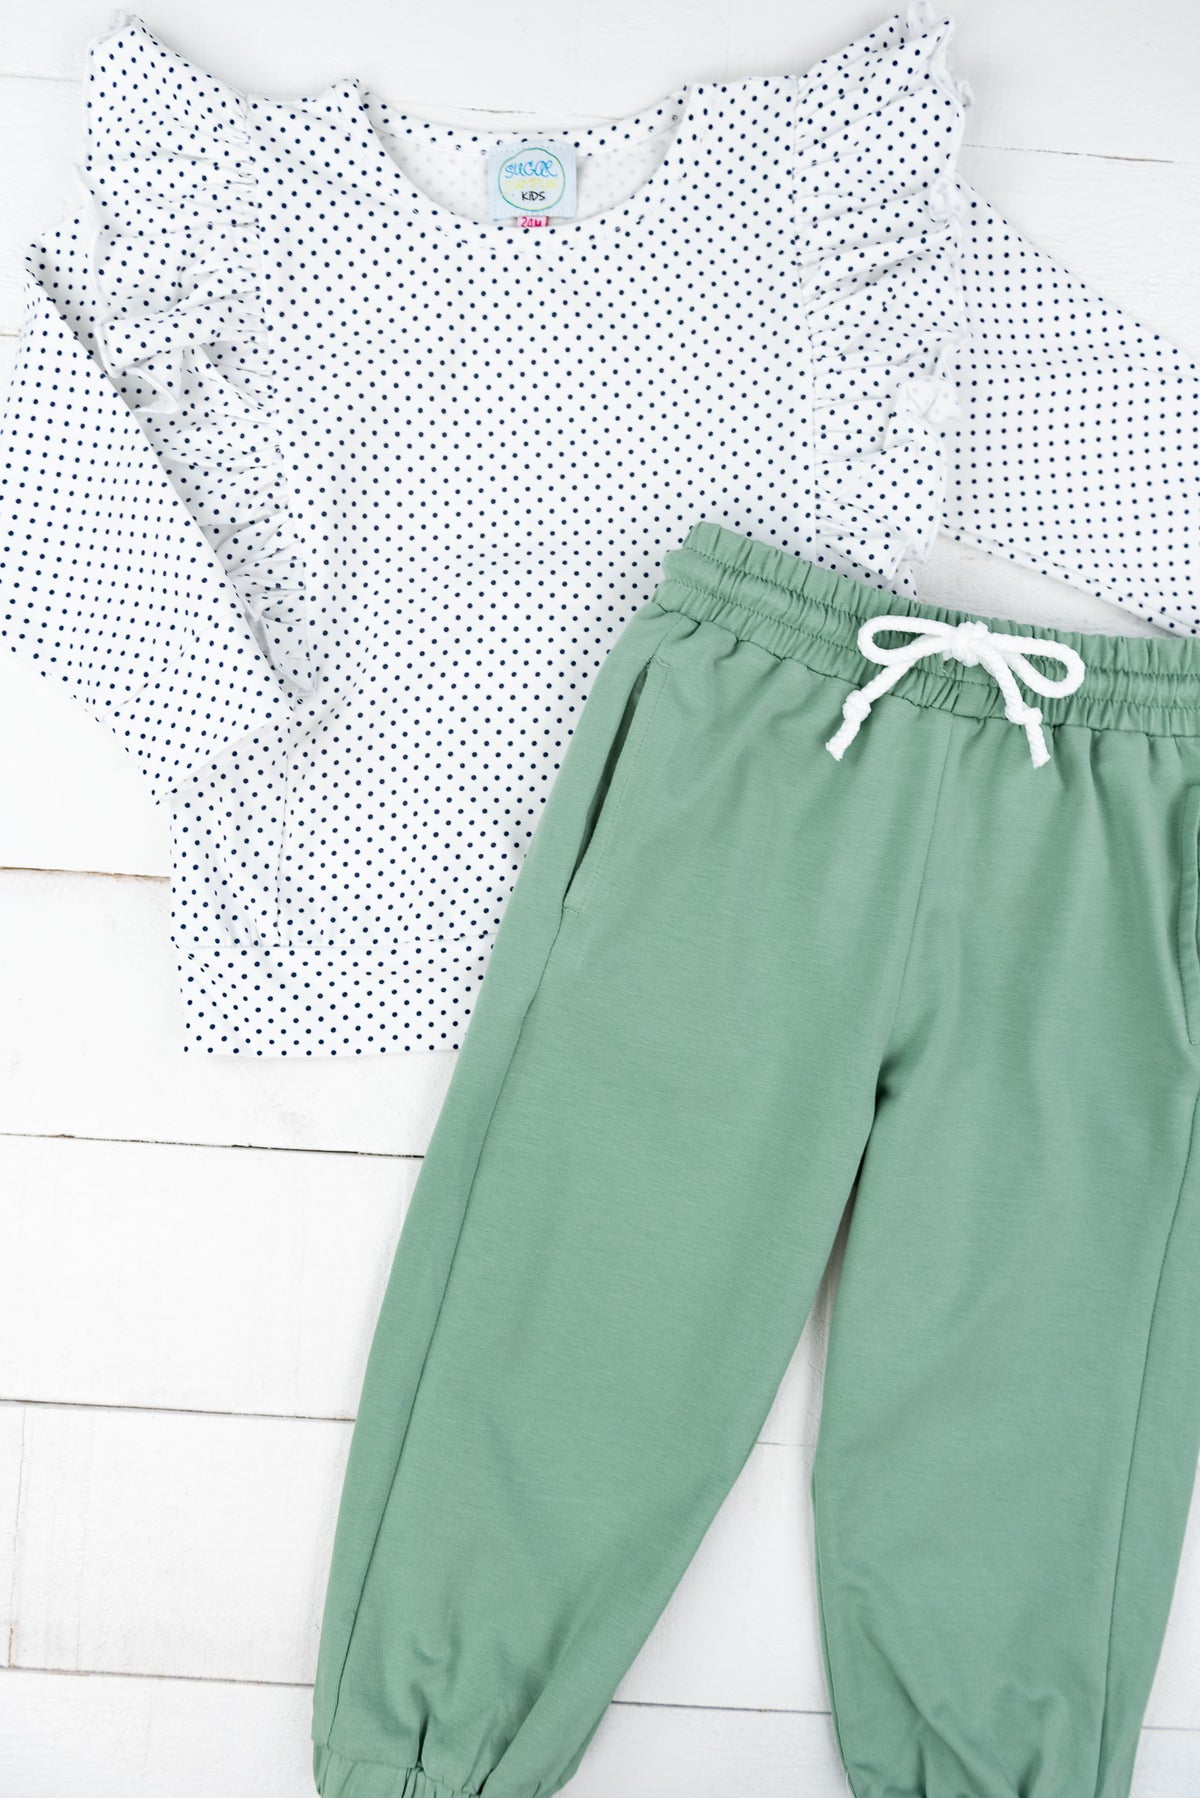 Girls Navy/Green Pants Set